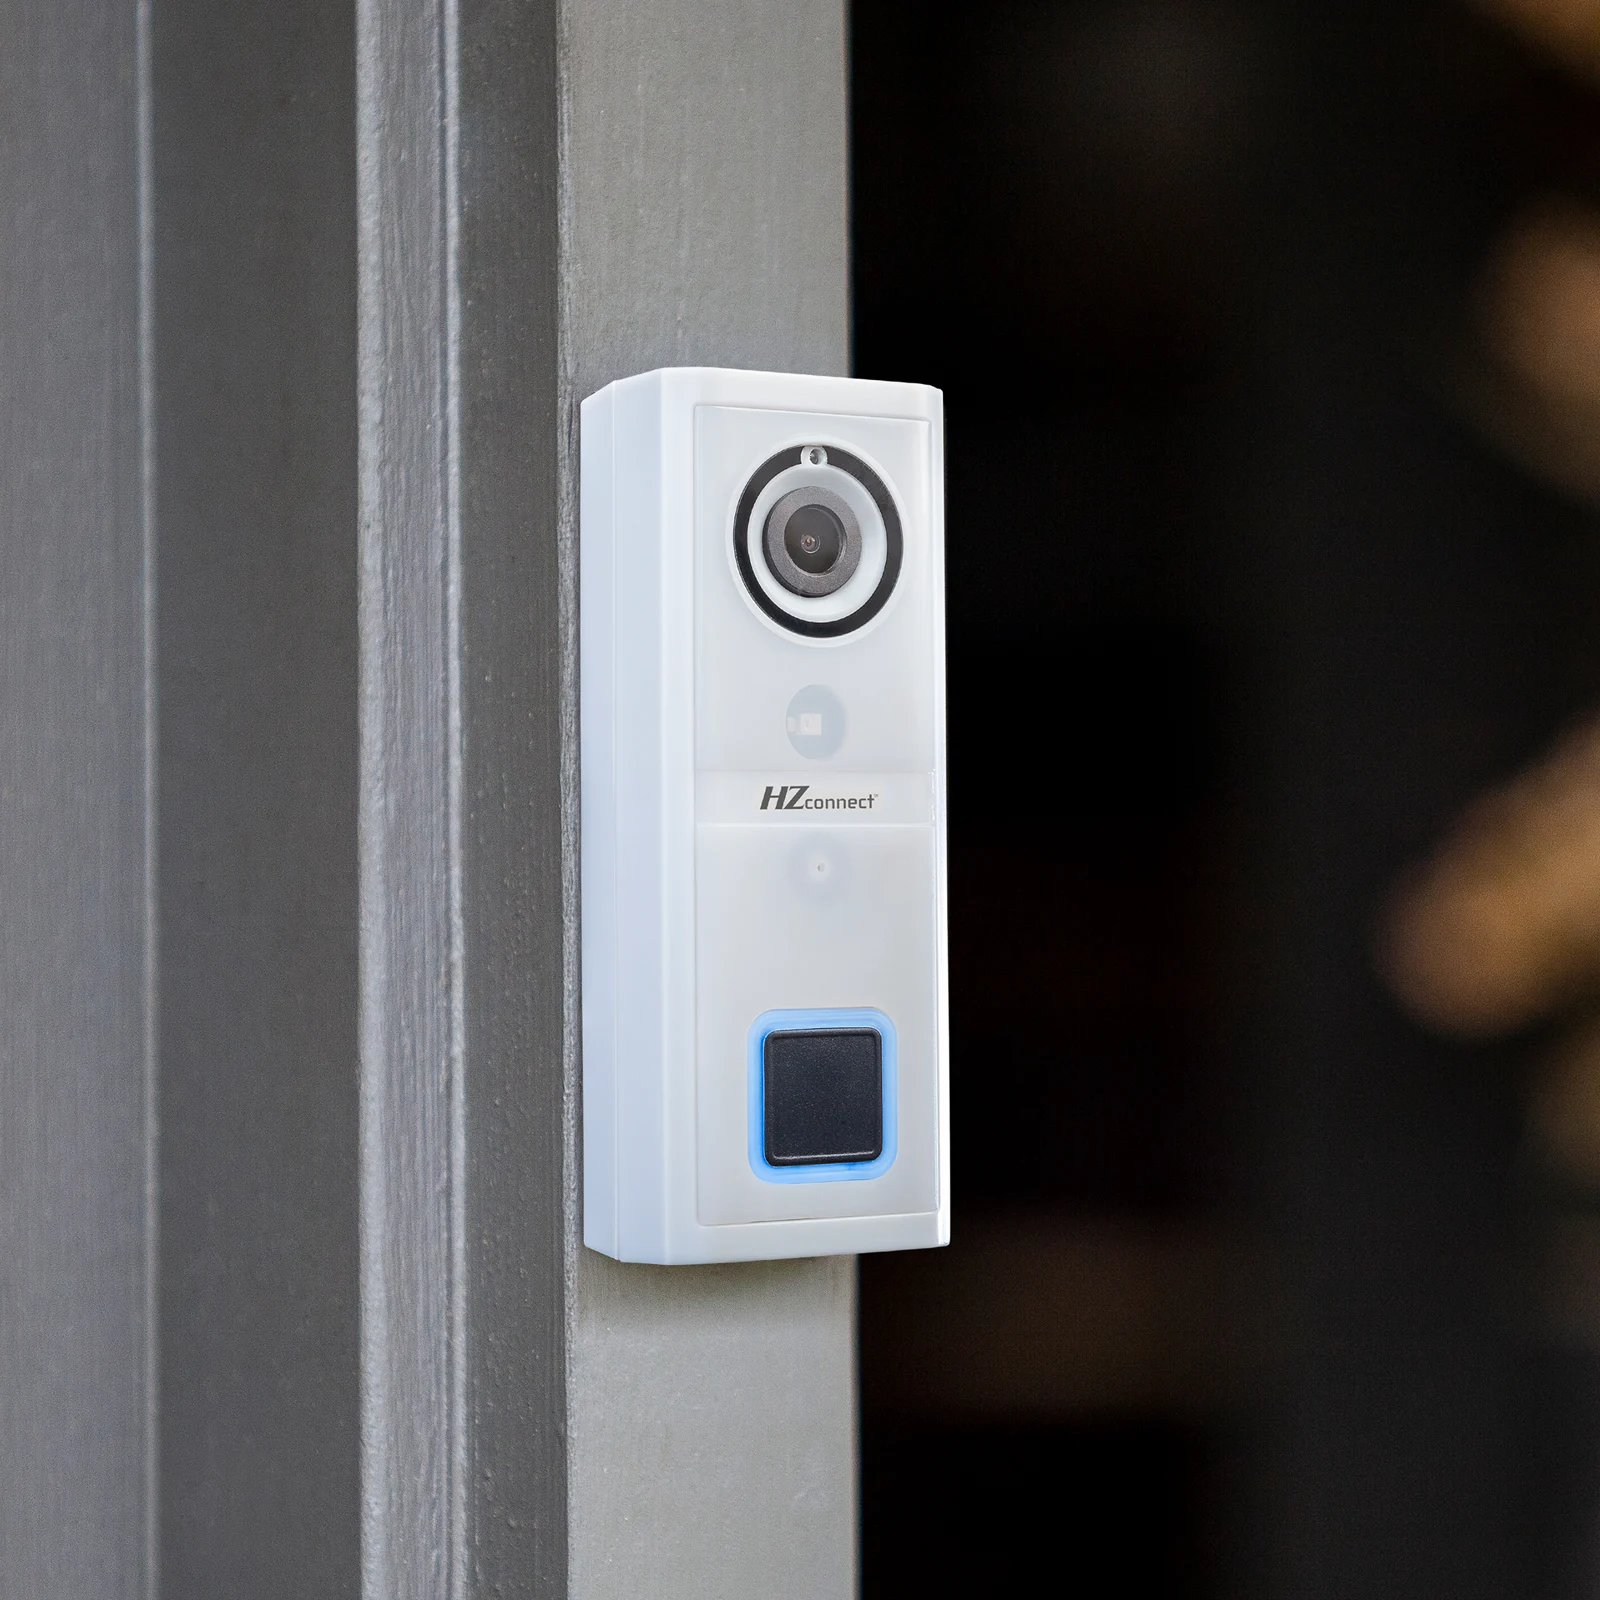 A doorbell camera